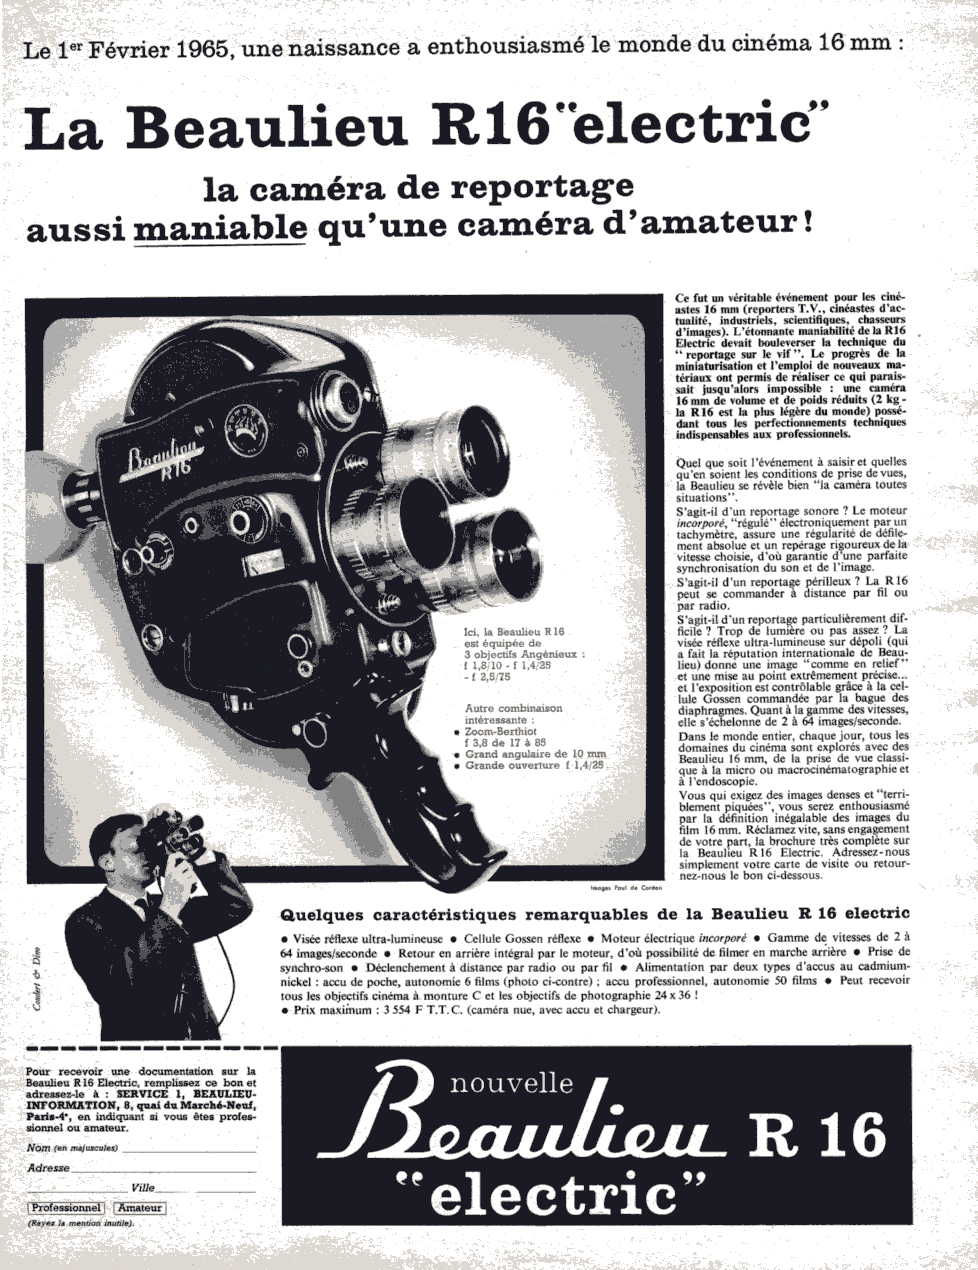 BEAULIEU R16 "Electric" (Publicité 1965)